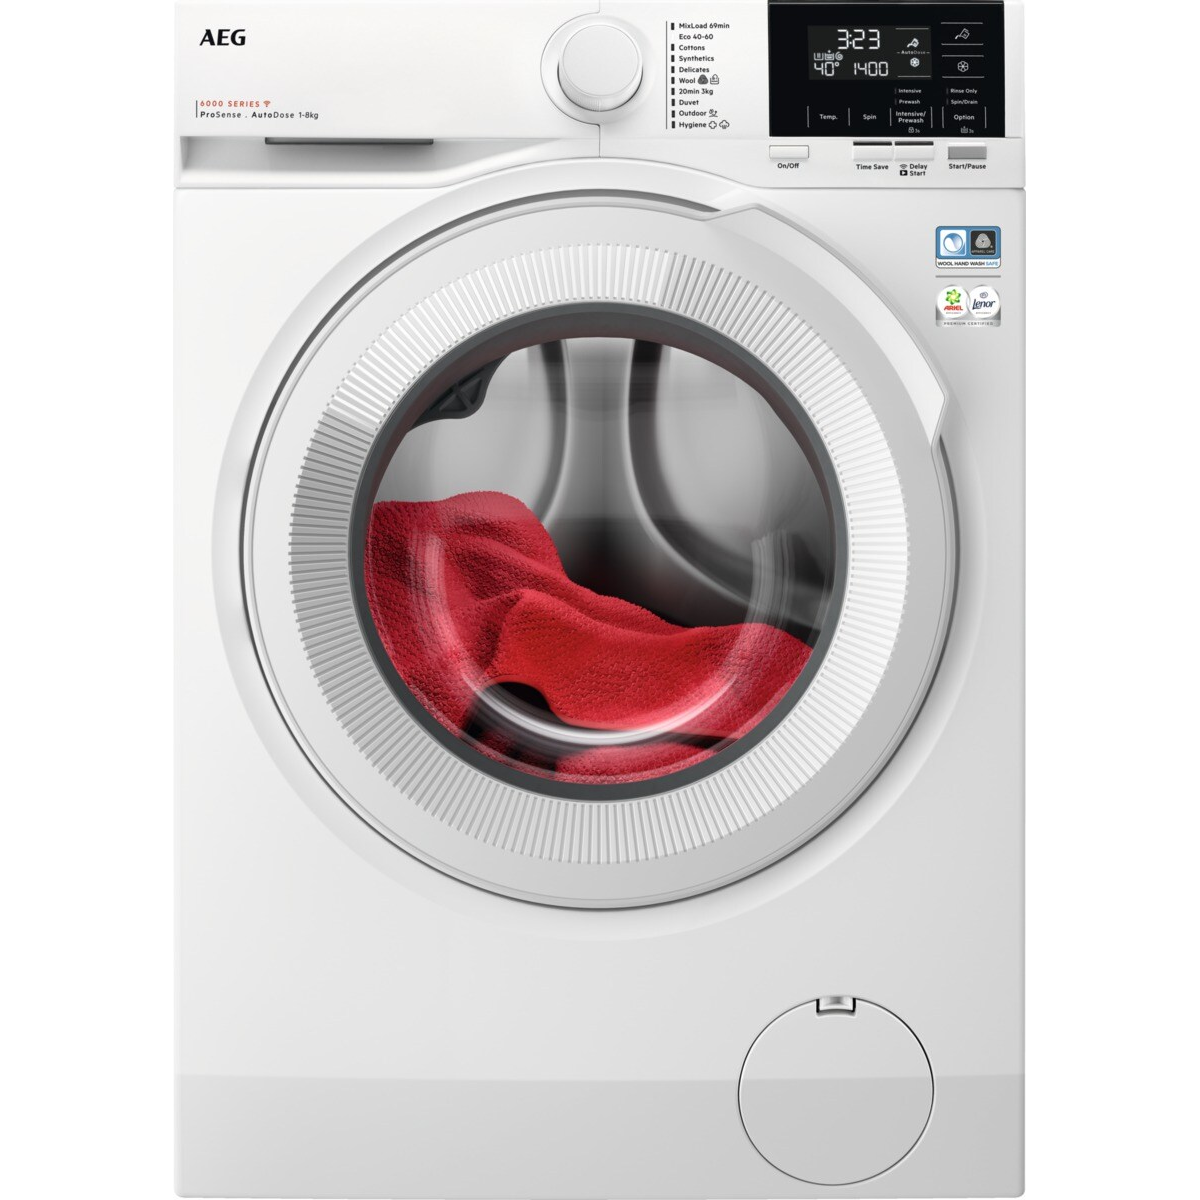 7332543979233 AEG LR622F84Q - Frontbetjent vaskemaskine med AutoDose Hvidevarer,Vaskemaskine,Frontbetjente vaskemaskiner 1100005520 LR622F84Q